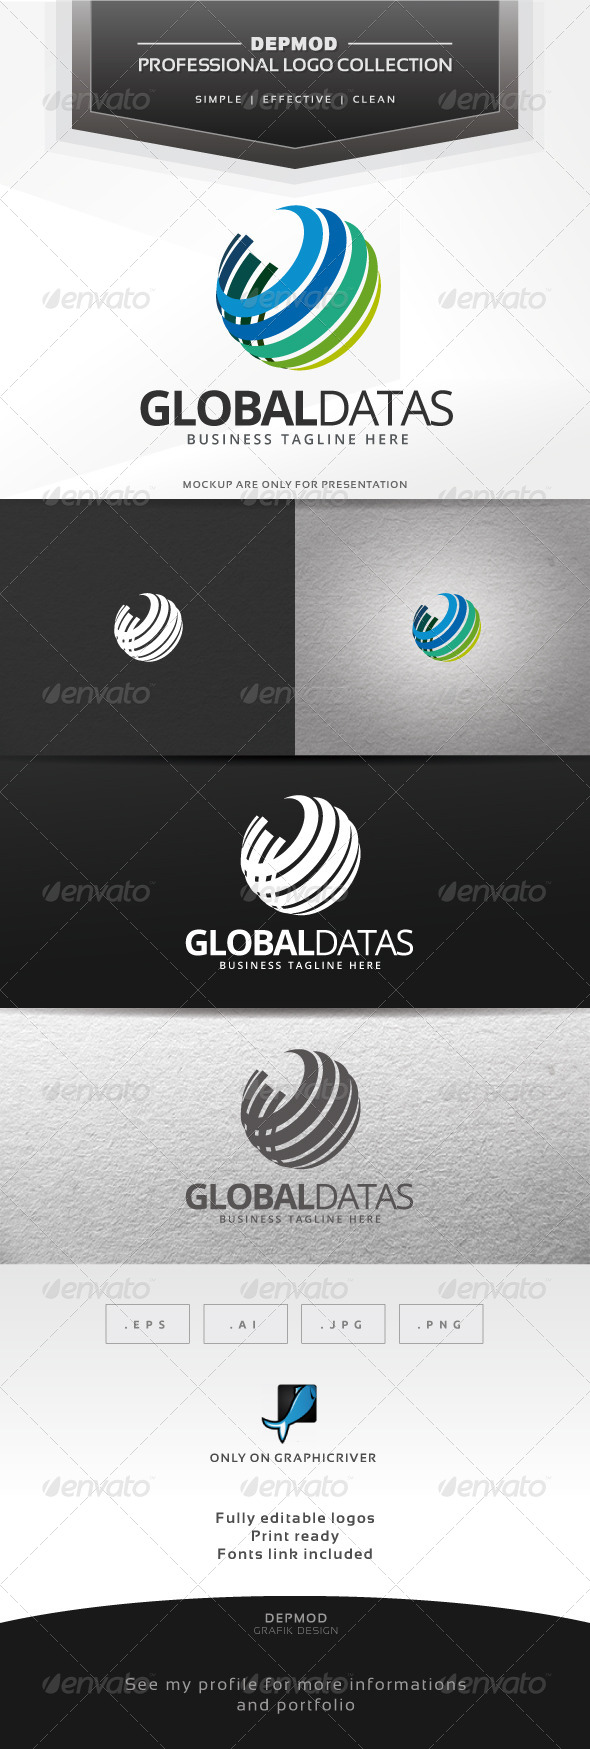 Global Datas Logo